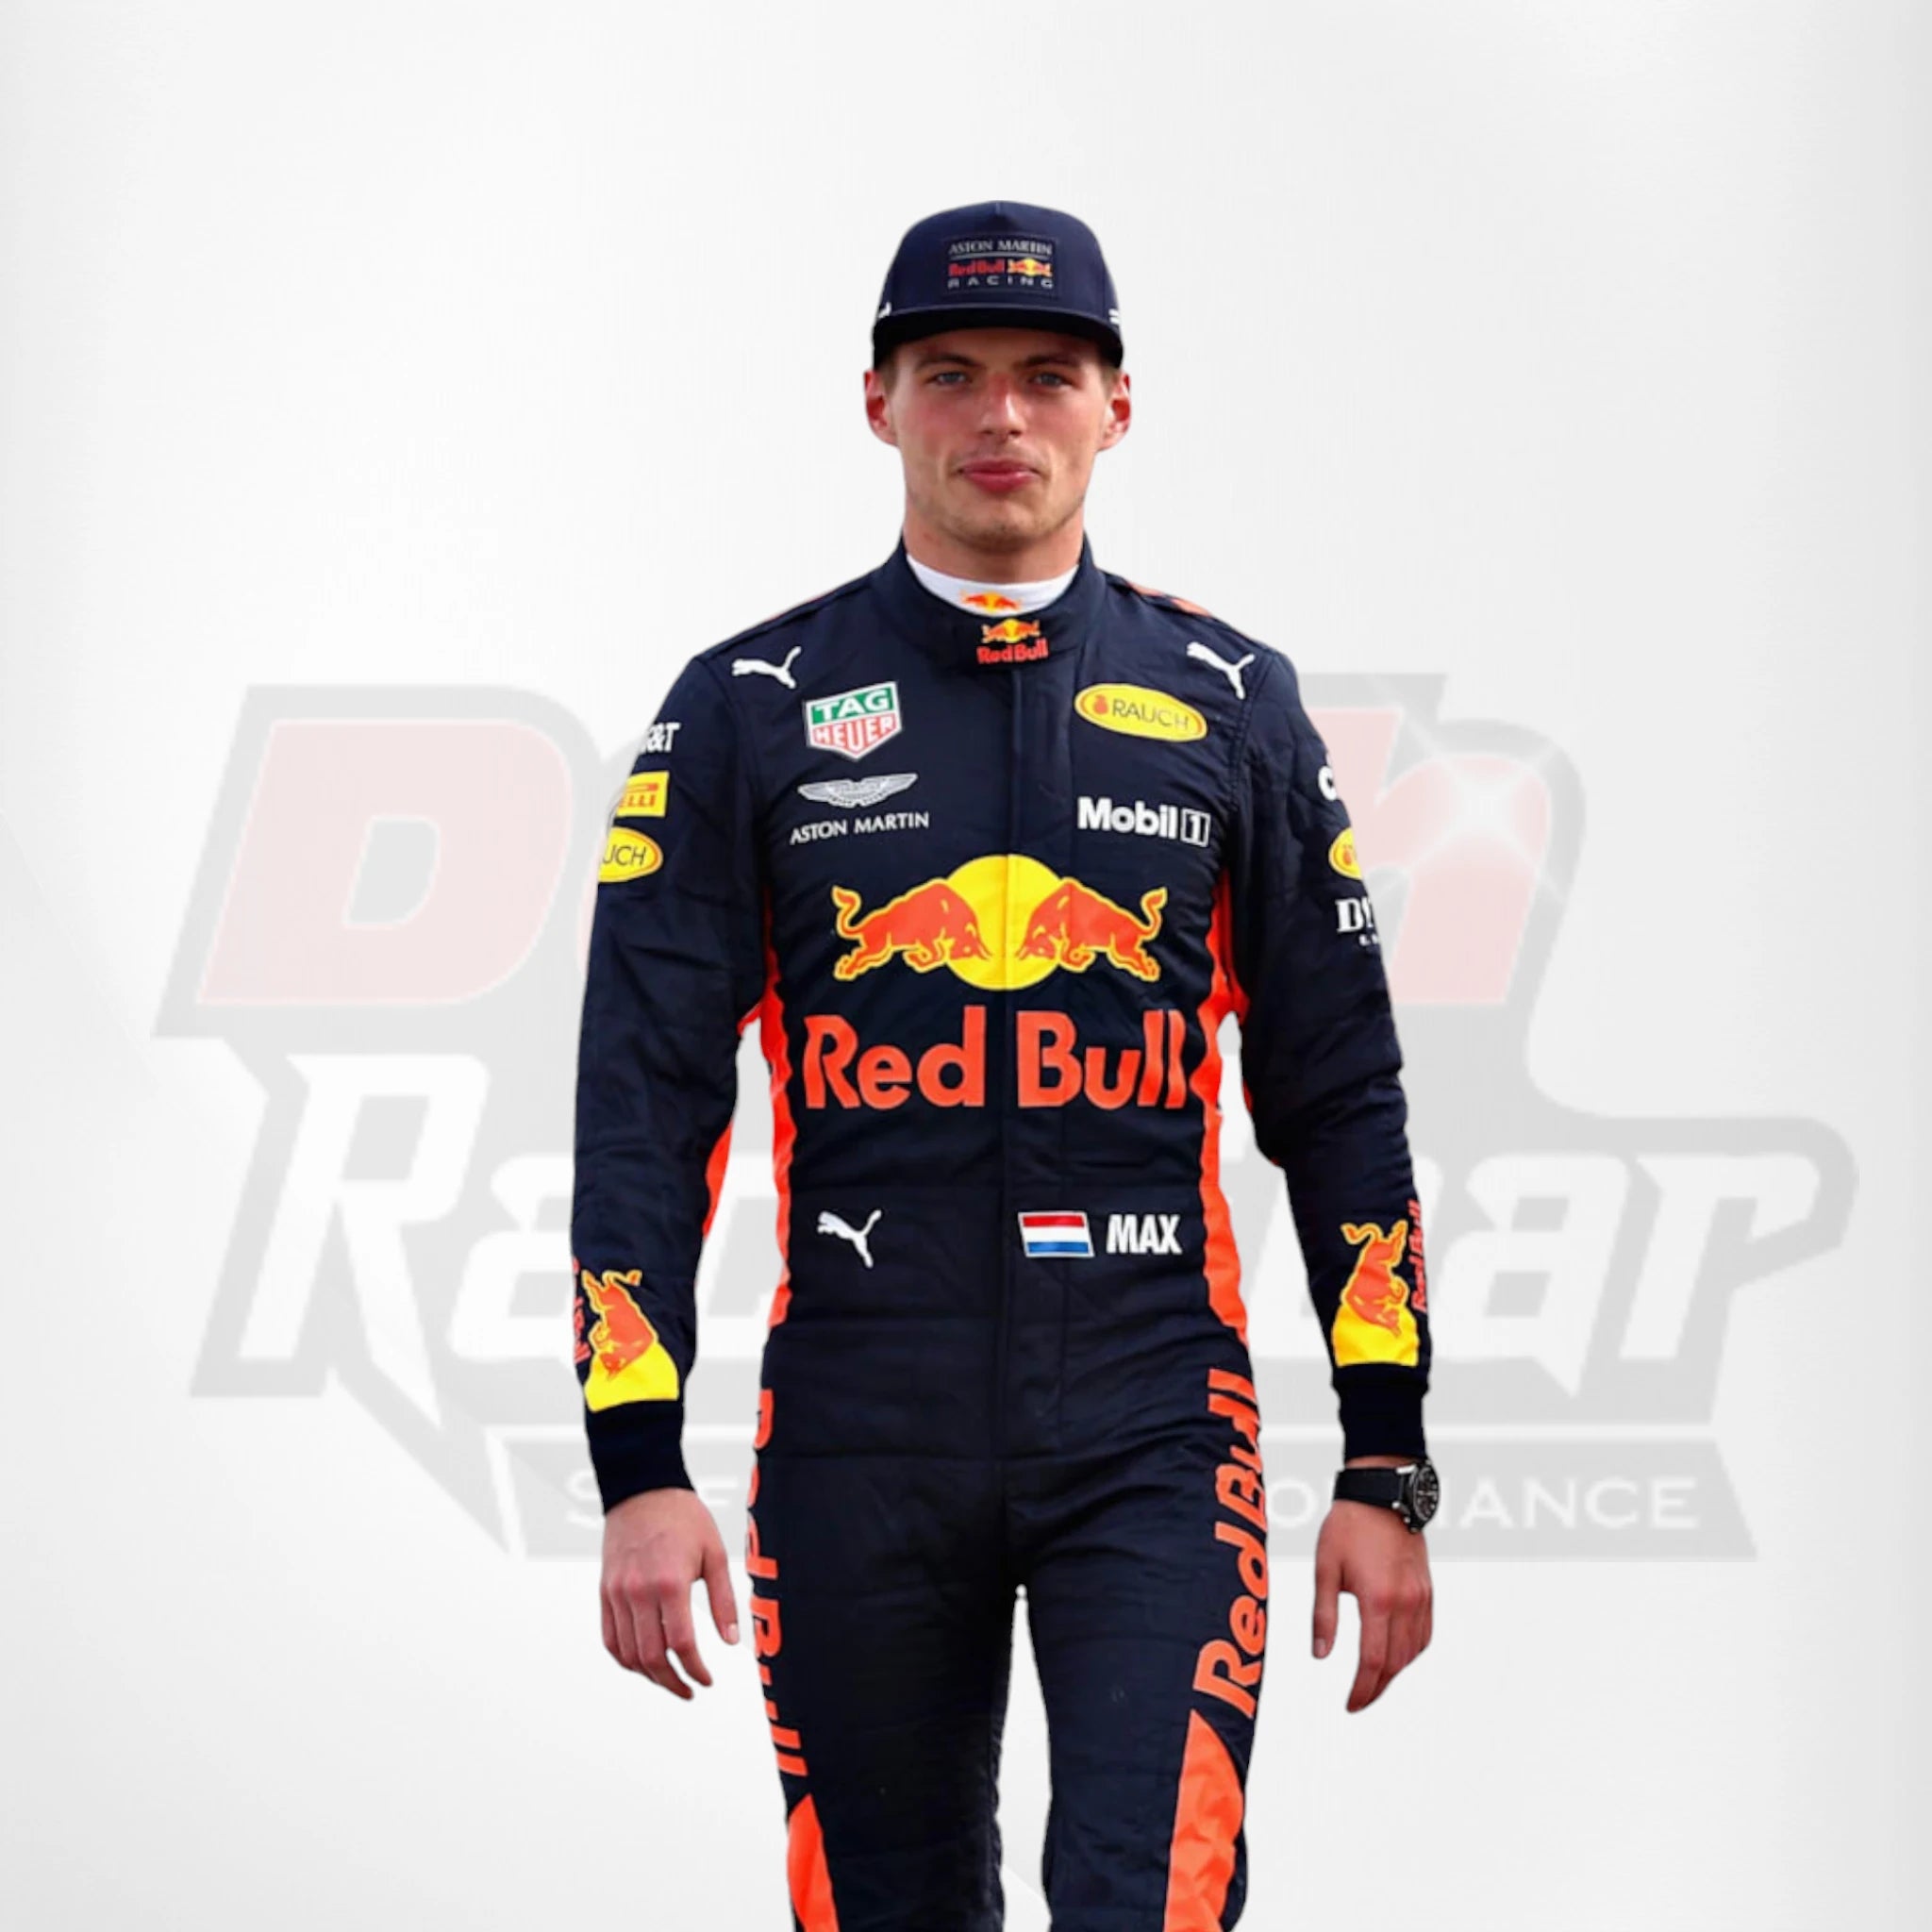 2017 Red Bull Max Verstappen F1 Race Suit